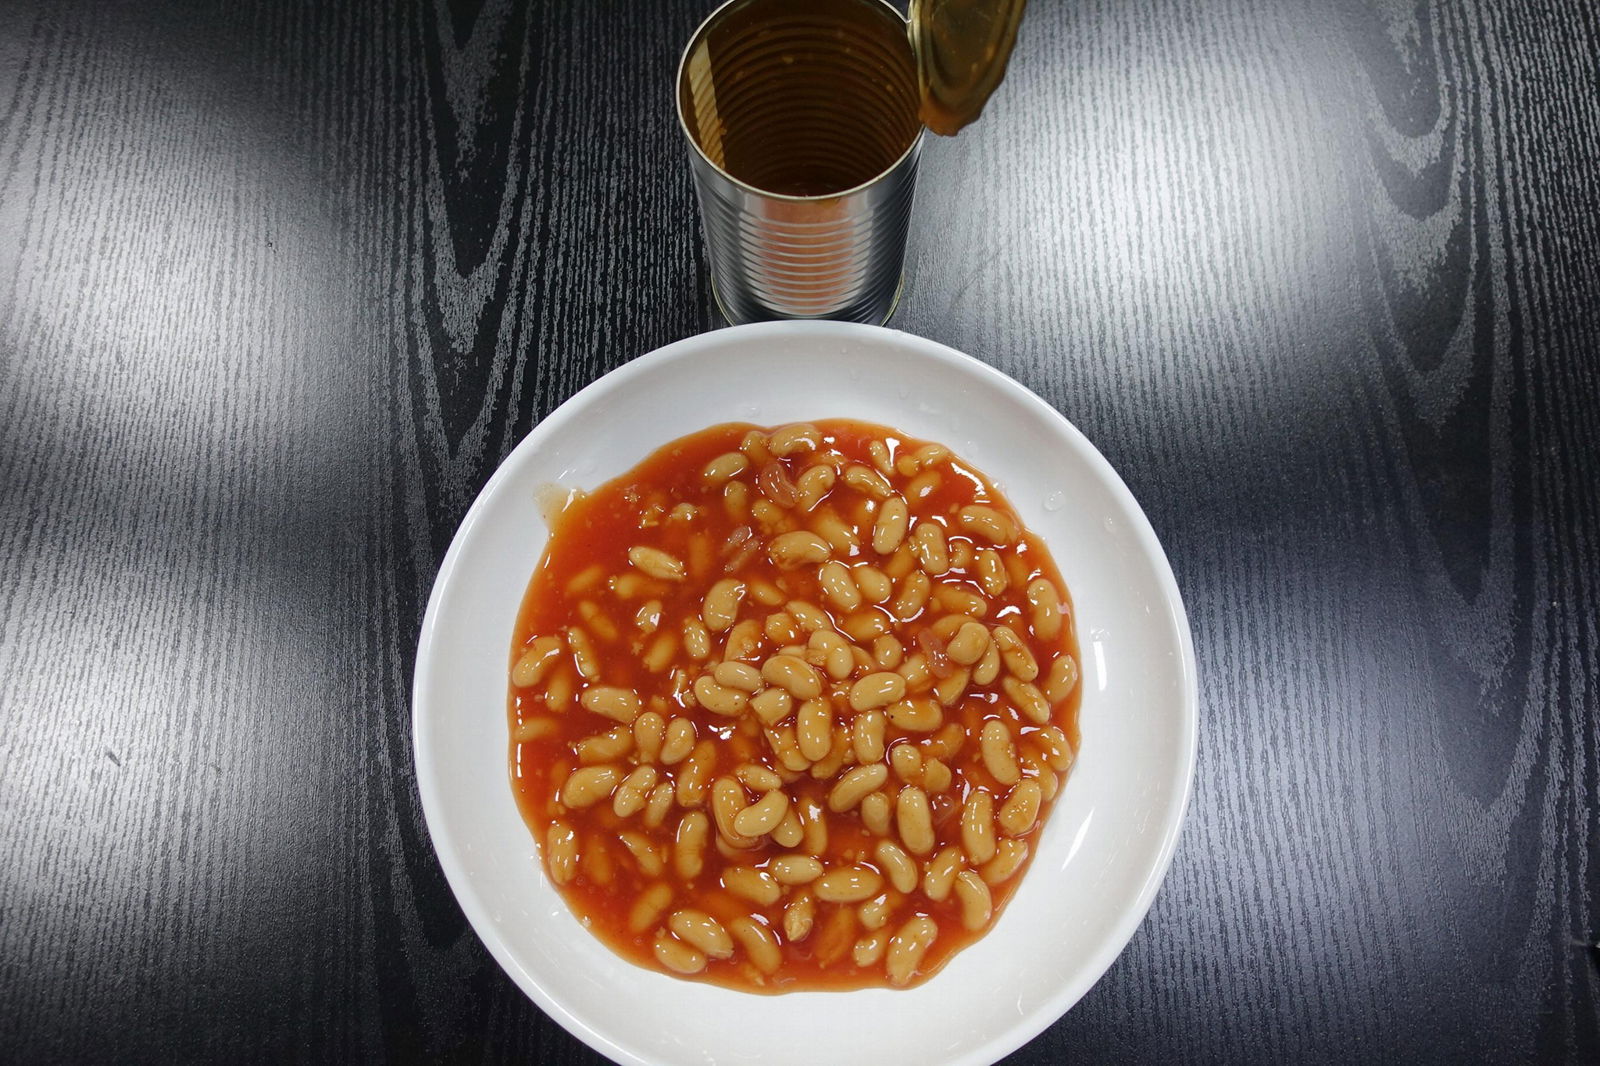 400G White Kidney Beans in Tomato Sauce 4